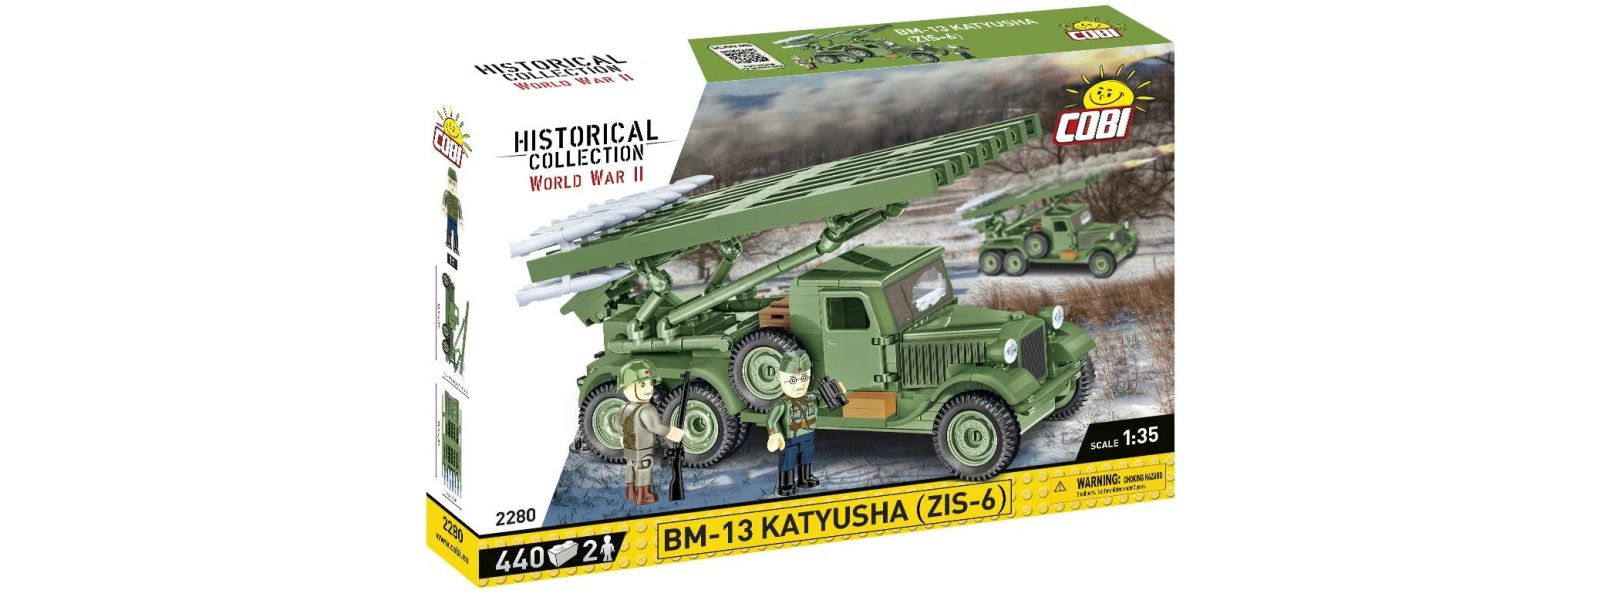 Historia z Cobi. Wyrzutnie BM-13 Katyusha – sekret radzieckiej artylerii rakietowej